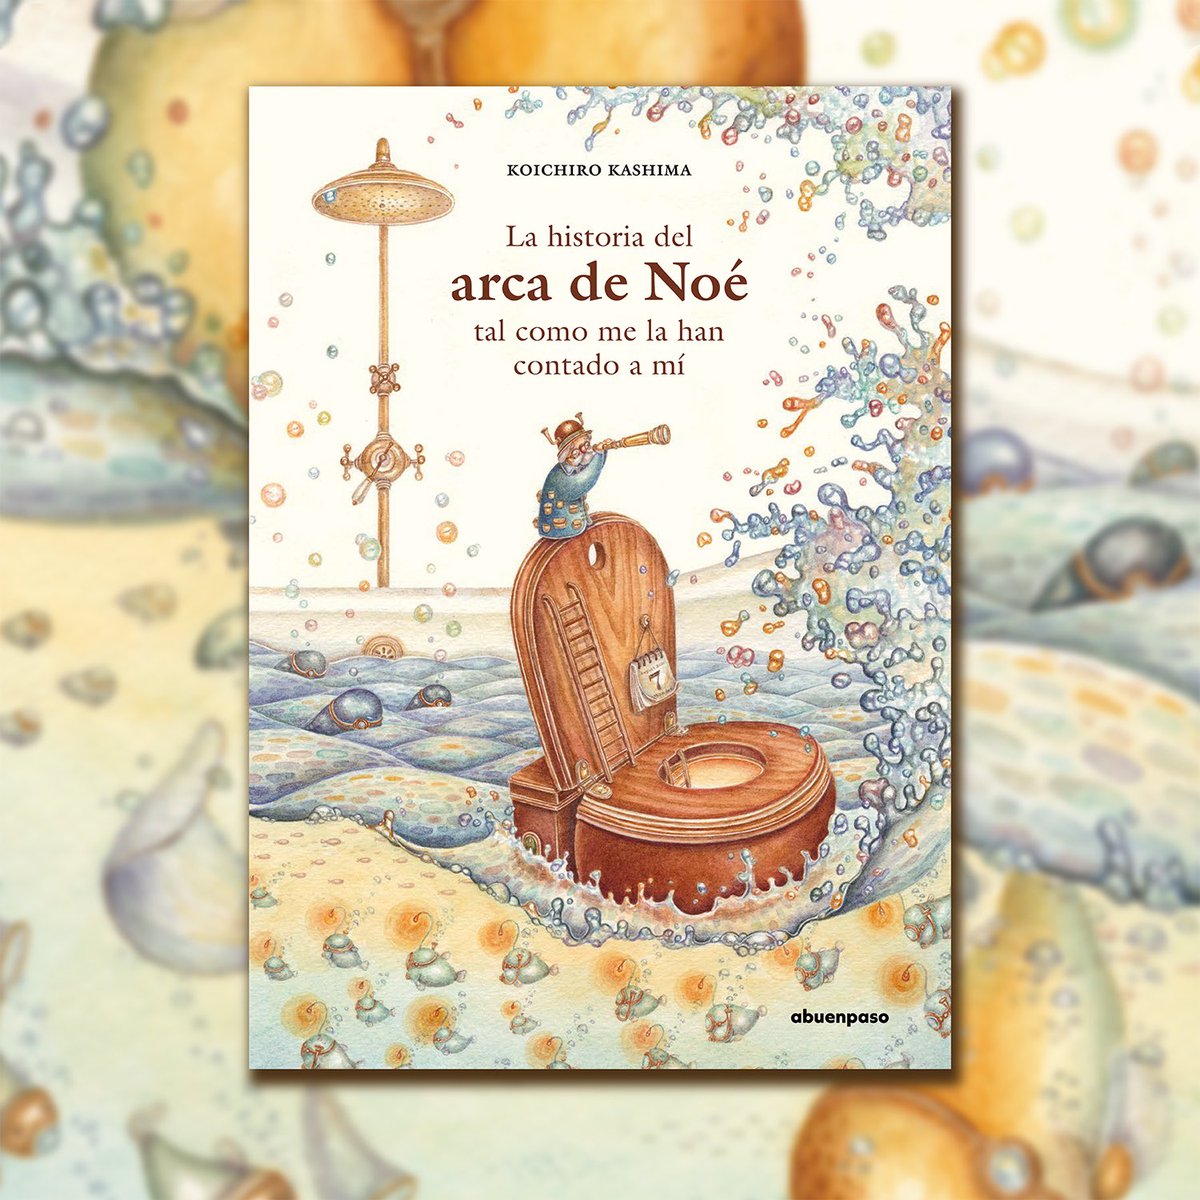 RT!!
一昨日は新作絵本の発売日でした!🇪🇸
もうスペインの本屋さんで並んでます!
.
この絵本は『ノアの方舟』のお話しをベースに書いたのですが、舞台は家のバスタブの中で、ノアが造る方舟はトイレの形をしています。ストーリーも普通のノアの方舟ではありません!本当に最高の絵本ができました!🛁 